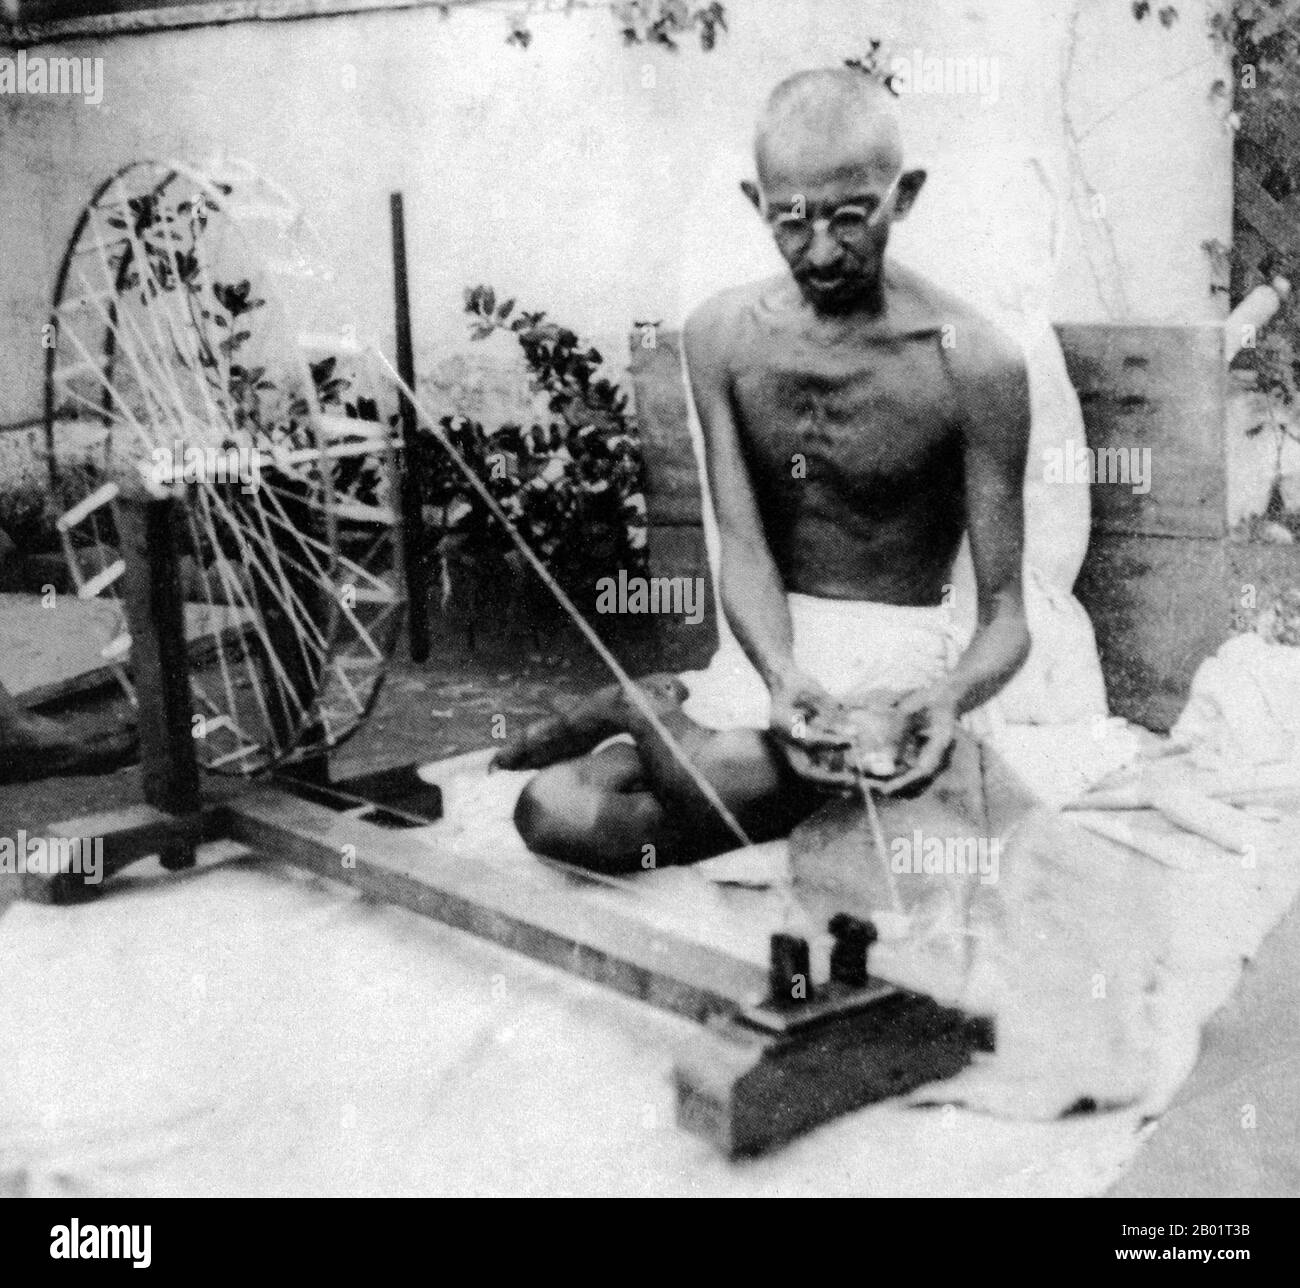 Inde : Mahatma Gandhi (2 octobre 1869 - 30 janvier 1948), leader politique et idéologique prééminent du mouvement indépendantiste indien, c. 1940. Mohandas Karamchand Gandhi était le leader politique et idéologique prééminent de l'Inde pendant le mouvement d'indépendance indienne. Il a été le pionnier du satyagraha. Ceci est défini comme la résistance à la tyrannie par la désobéissance civile de masse, une philosophie fermement fondée sur l'ahimsa, ou la non-violence totale. Ce concept a aidé l’Inde à gagner son indépendance et inspiré des mouvements pour les droits civils et la liberté à travers le monde. Banque D'Images